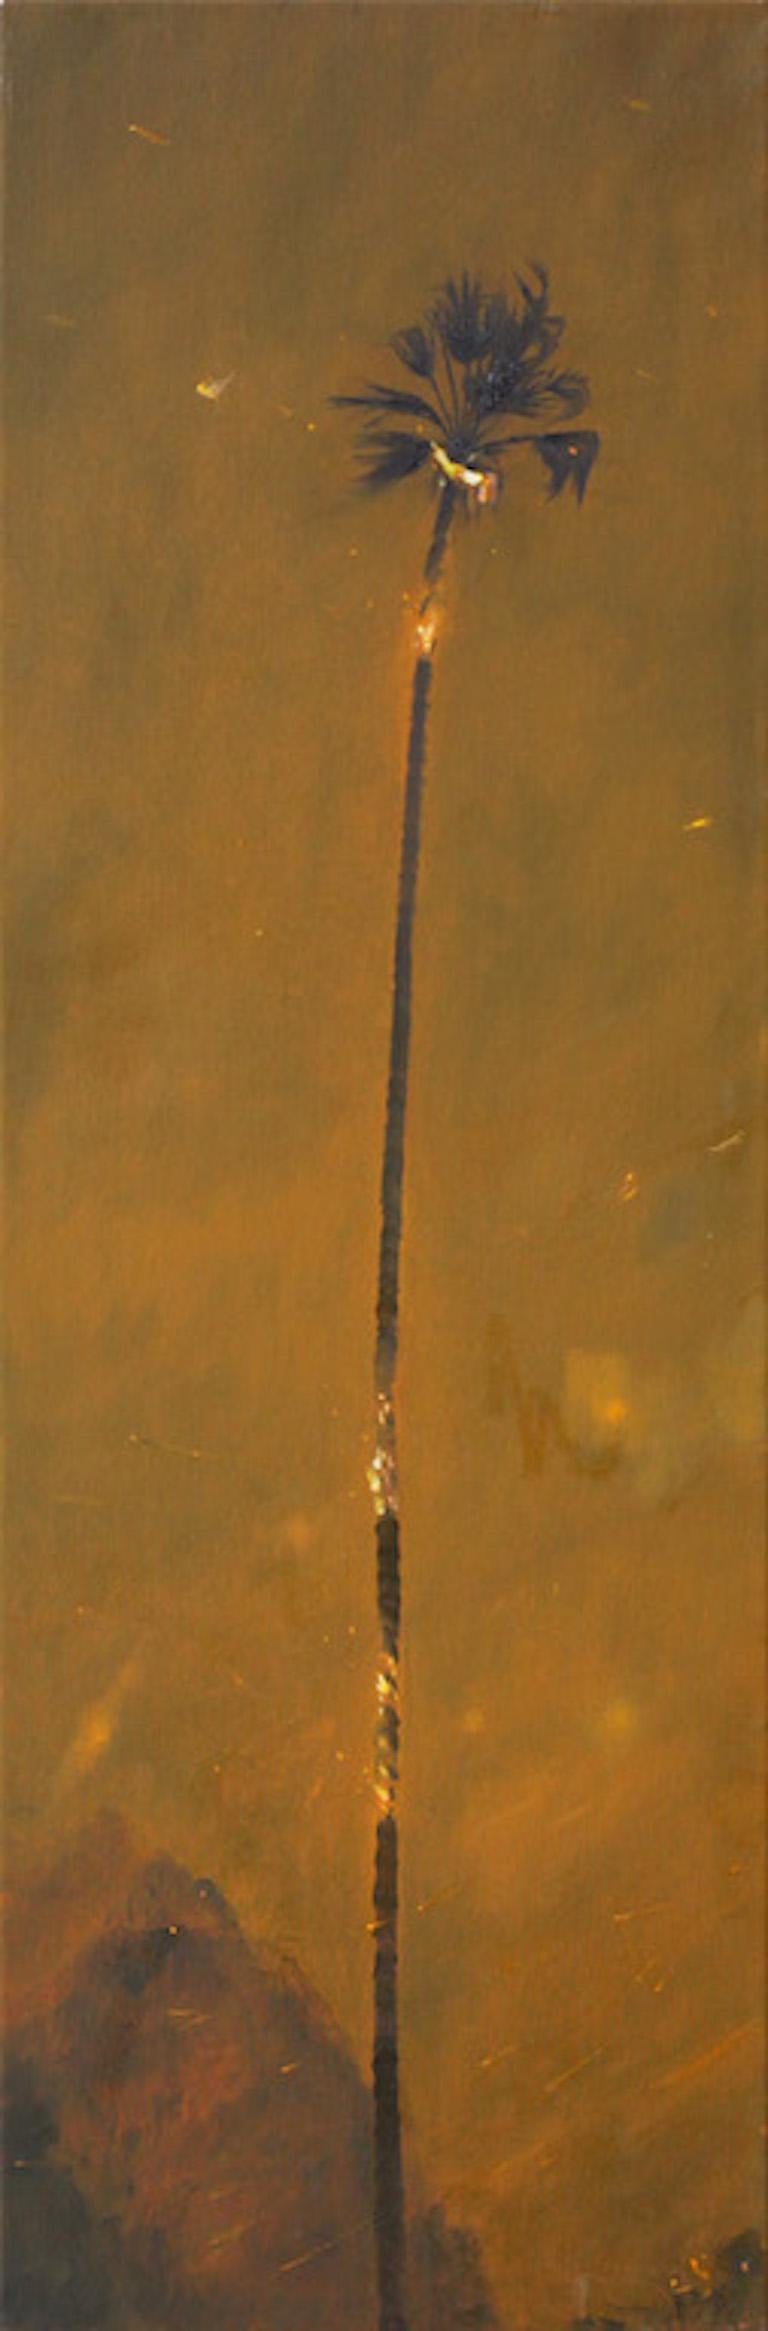 Landscape Painting Perry Vàsquez - Peinture contemporaine conceptuelle de palmier, « Palmier brûlé ».